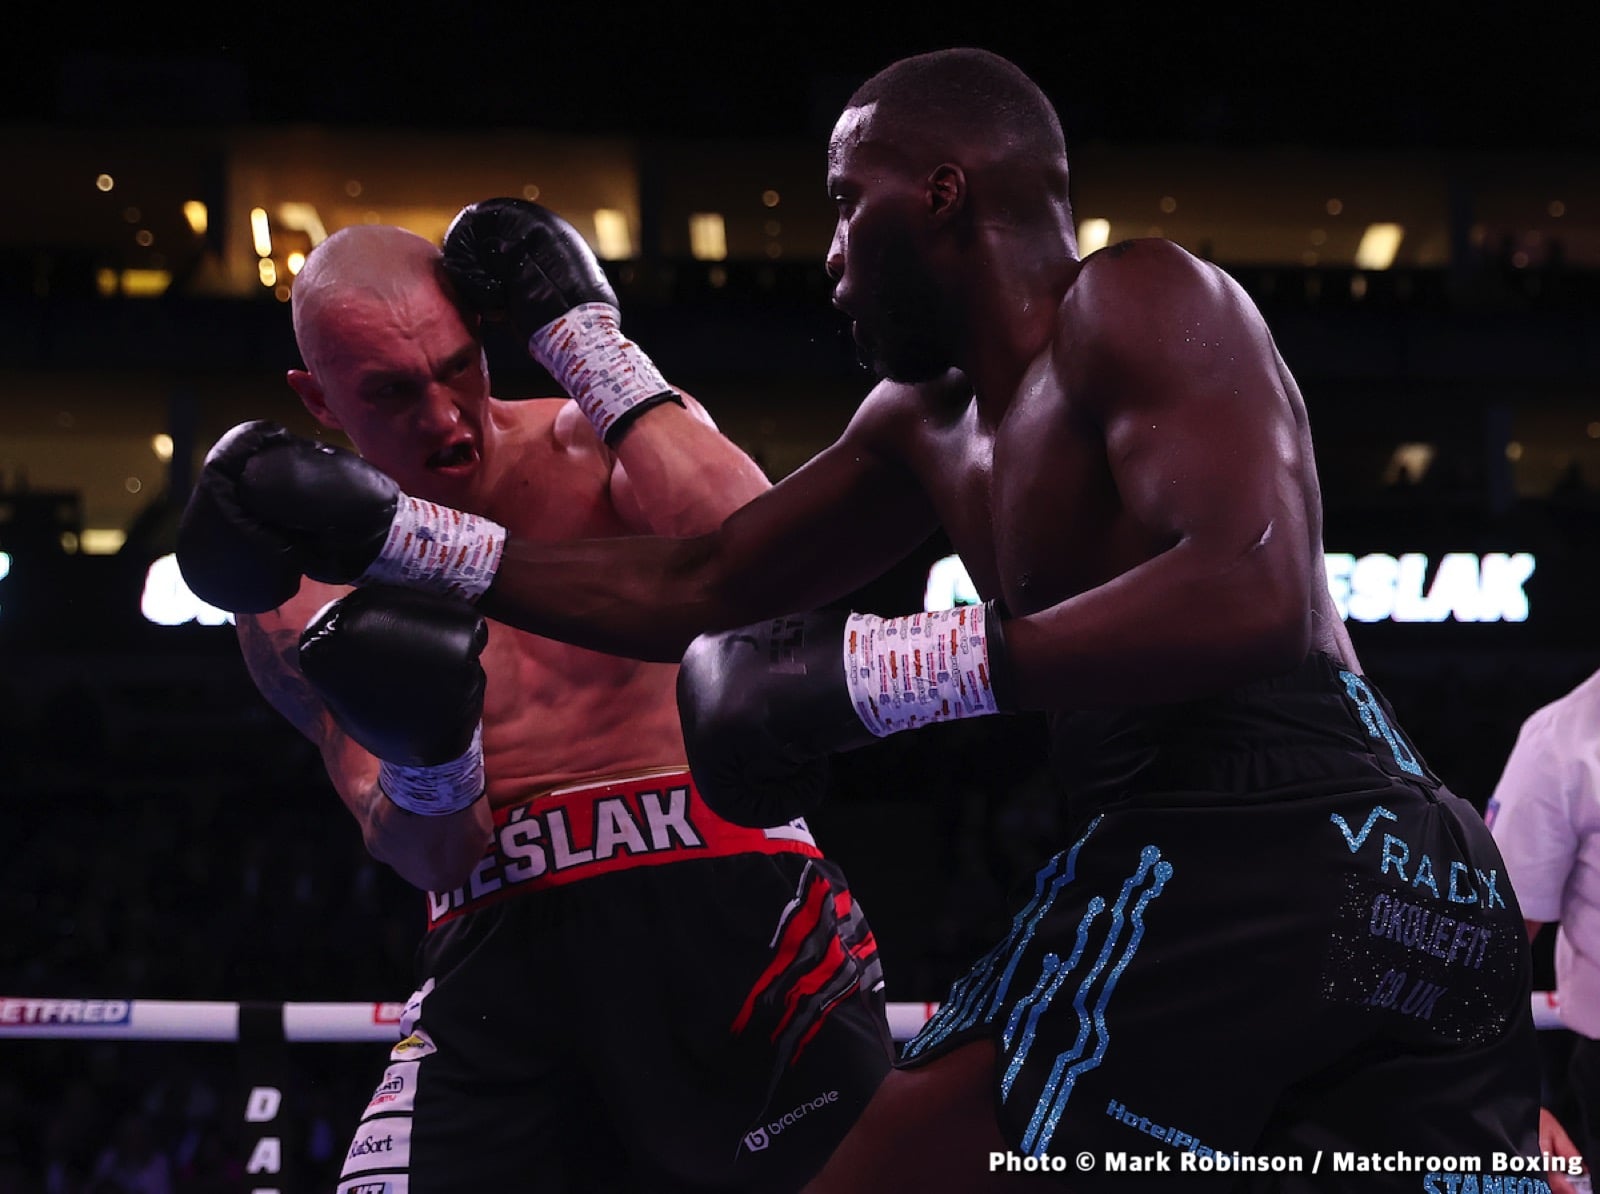 Fabio Wardley boxing image / photo